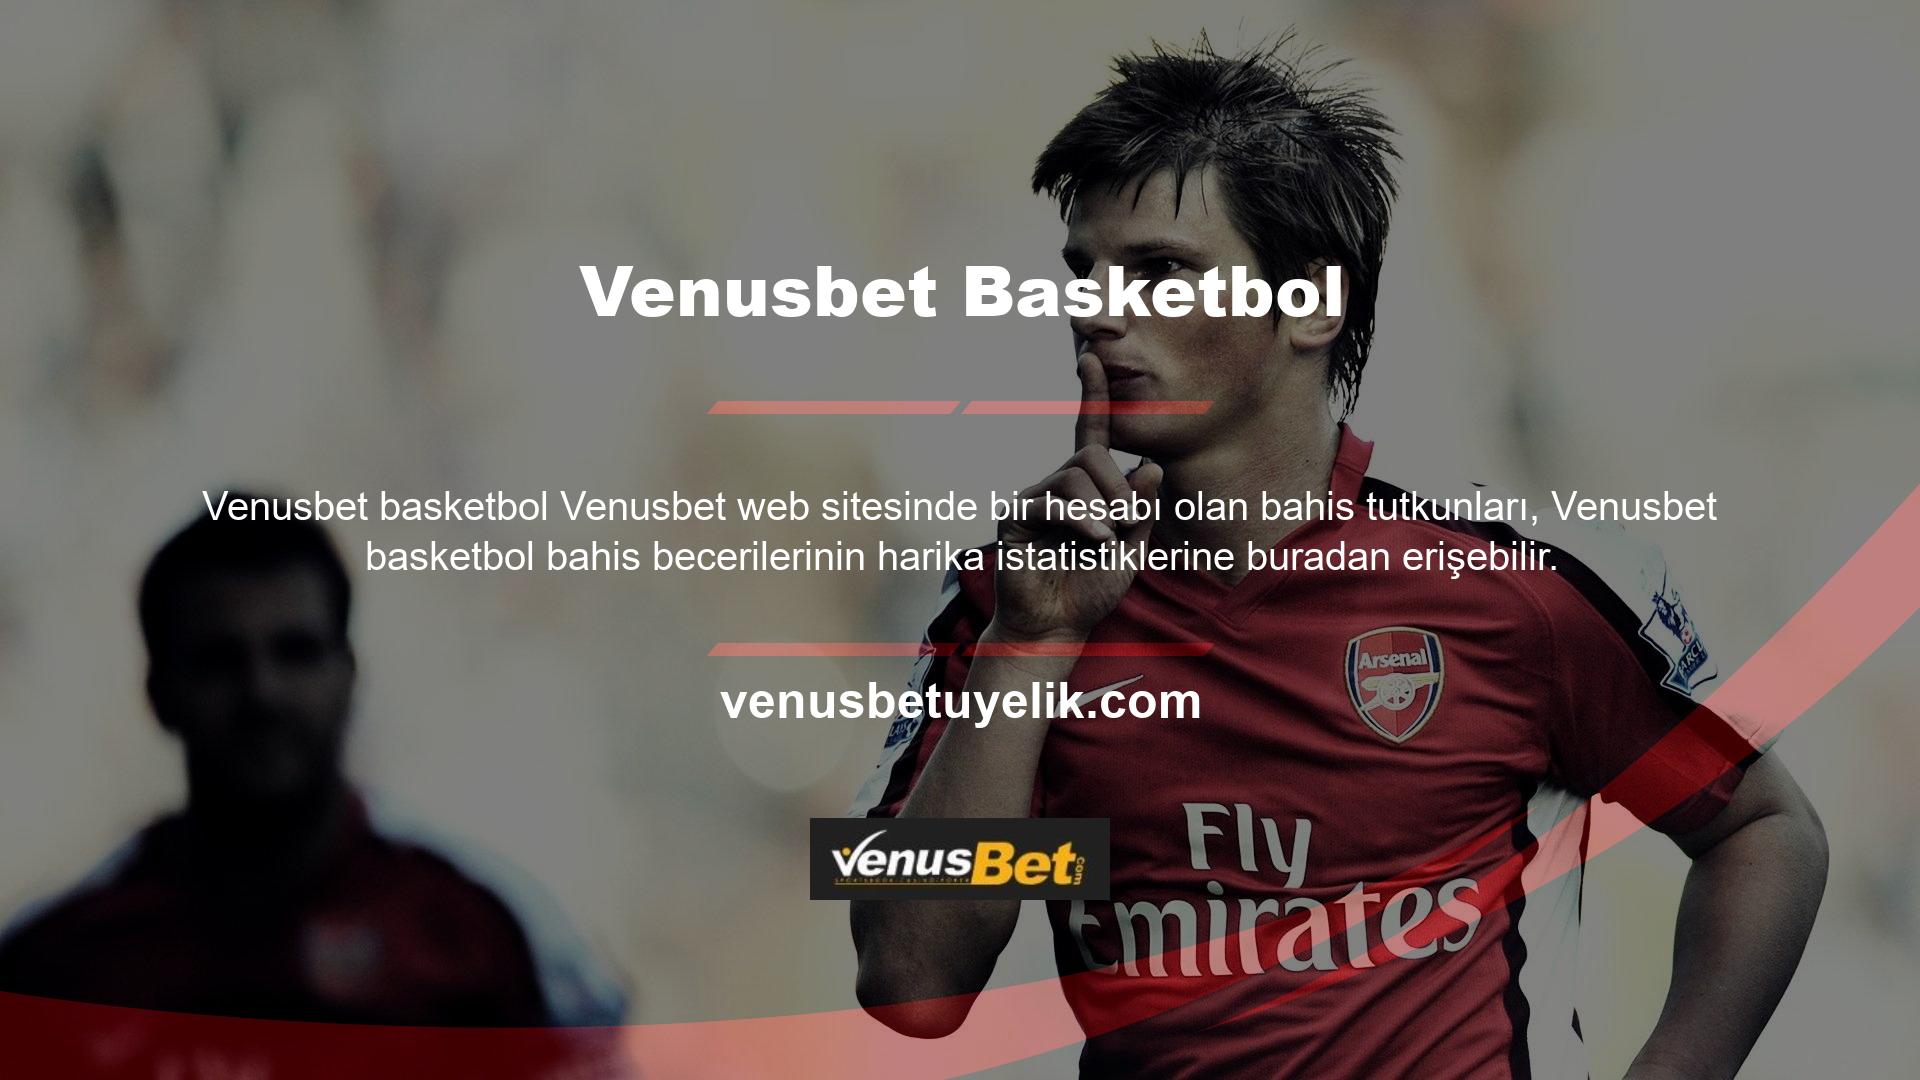 Venusbet web sitesi, her zaman canlı bahis oyunlarına odaklanan ve oyunculara bu konuda en iyi fırsatları sunmaya çalışan aktif sitelerden biridir